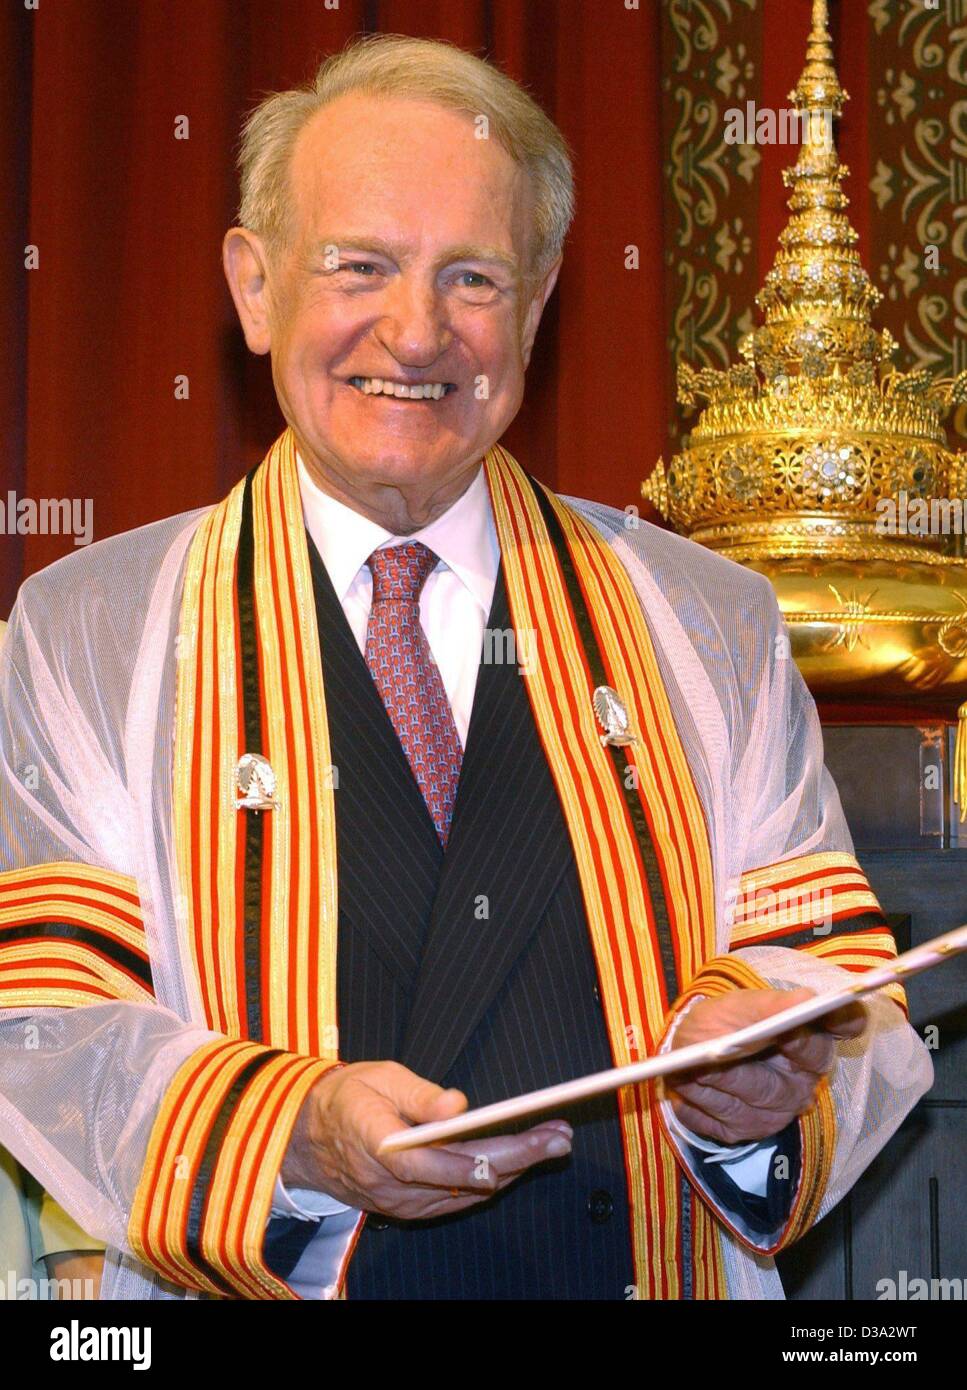 (Dpa) - Ridere il Presidente tedesco Johannes Rau detiene un certificato nell'università di Chulalongkorn a Bangkok, Thailandia, 25 giugno 2002. Il tedesco più è stato nominato dottore Honoris causa per scienze politiche. Rau abbiamo trascorso quattro giorni a Bangkok nel corso del suo viaggio attraverso l'Asia. Foto Stock